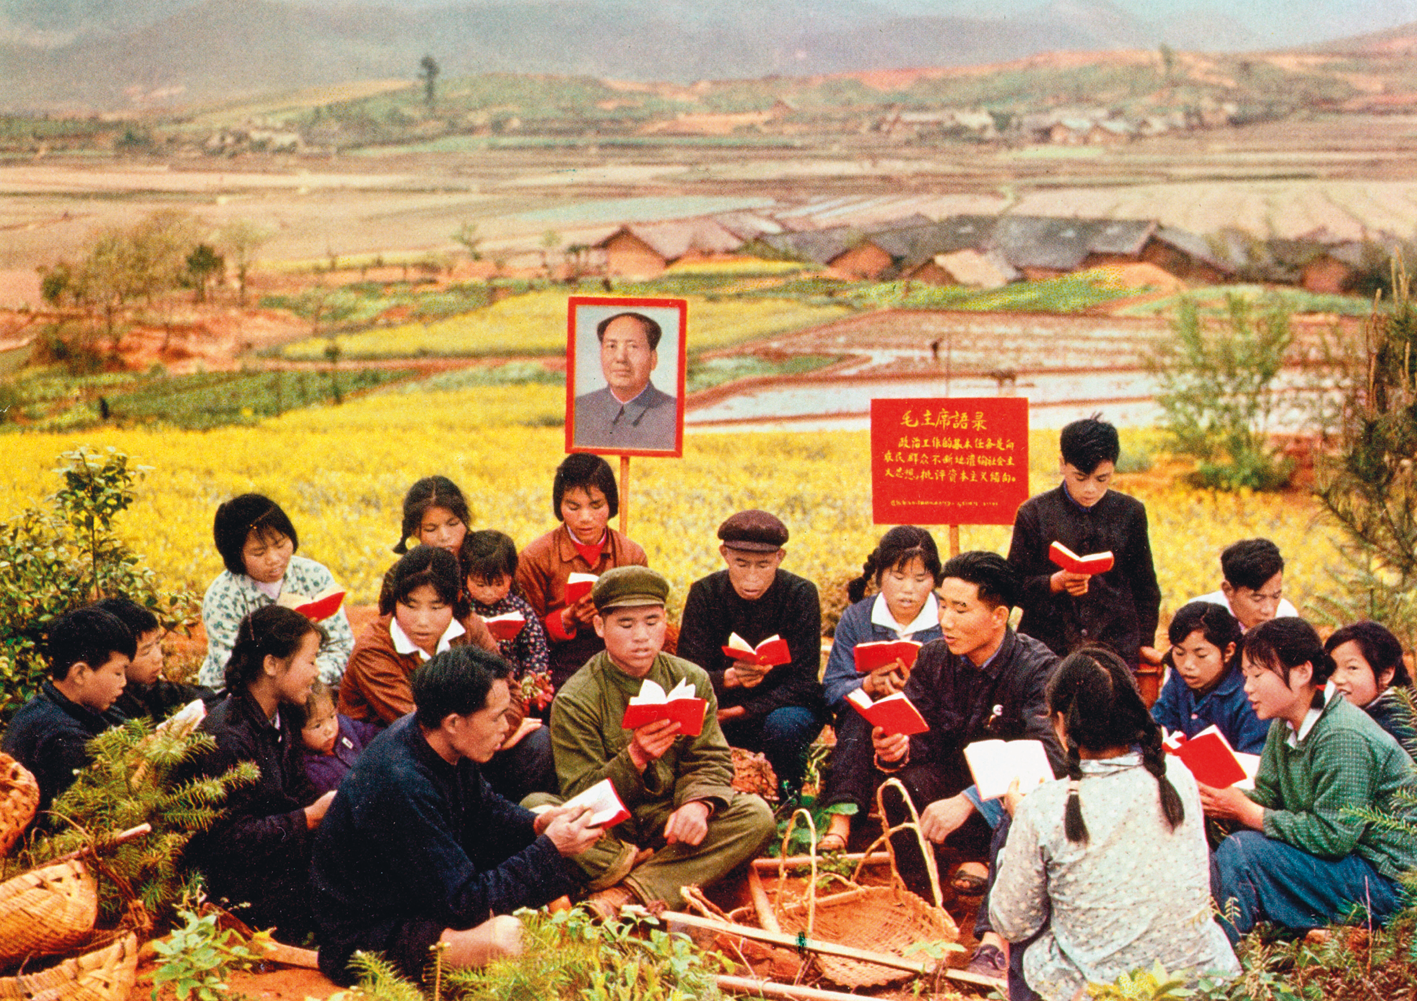 Fotografia. Jovens sentados em uma colina lendo um pequeno livro de capa vermelha. Atrás deles duas placas, uma com dizeres em chinês e outra com o retrato de Mao Tsé-tung, homem calvo de paletó cinza. Ao fundo plantações de arroz e outras plantações ao lado do vilarejo.